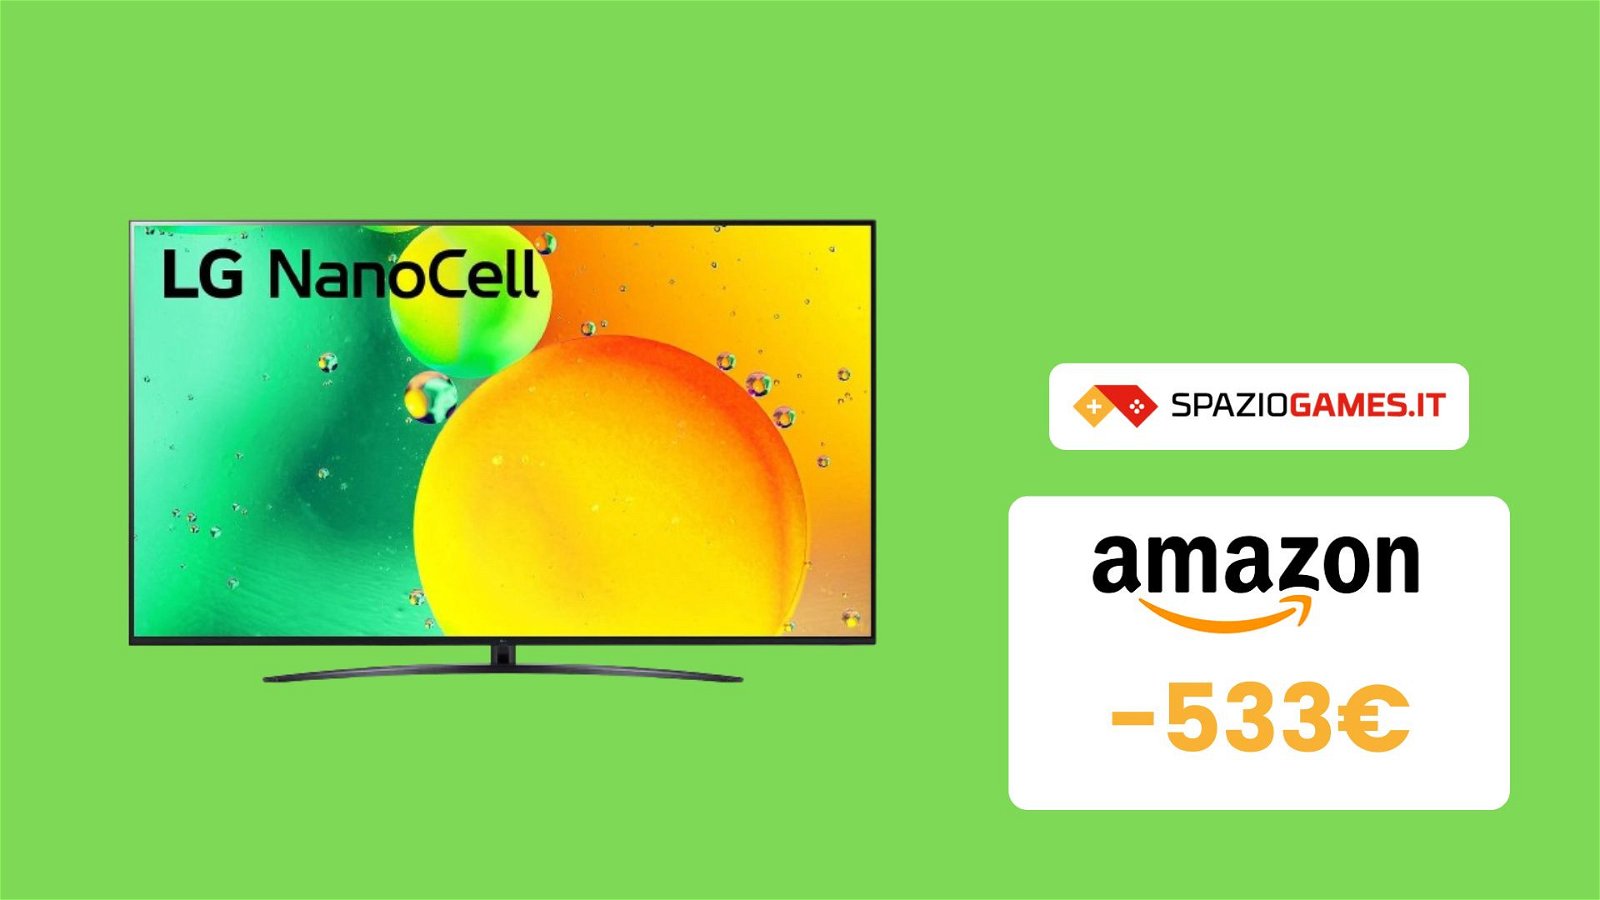 Smart TV LG NanoCell 75" 4K a un SUPER prezzo! Oltre 533€ di SCONTO!